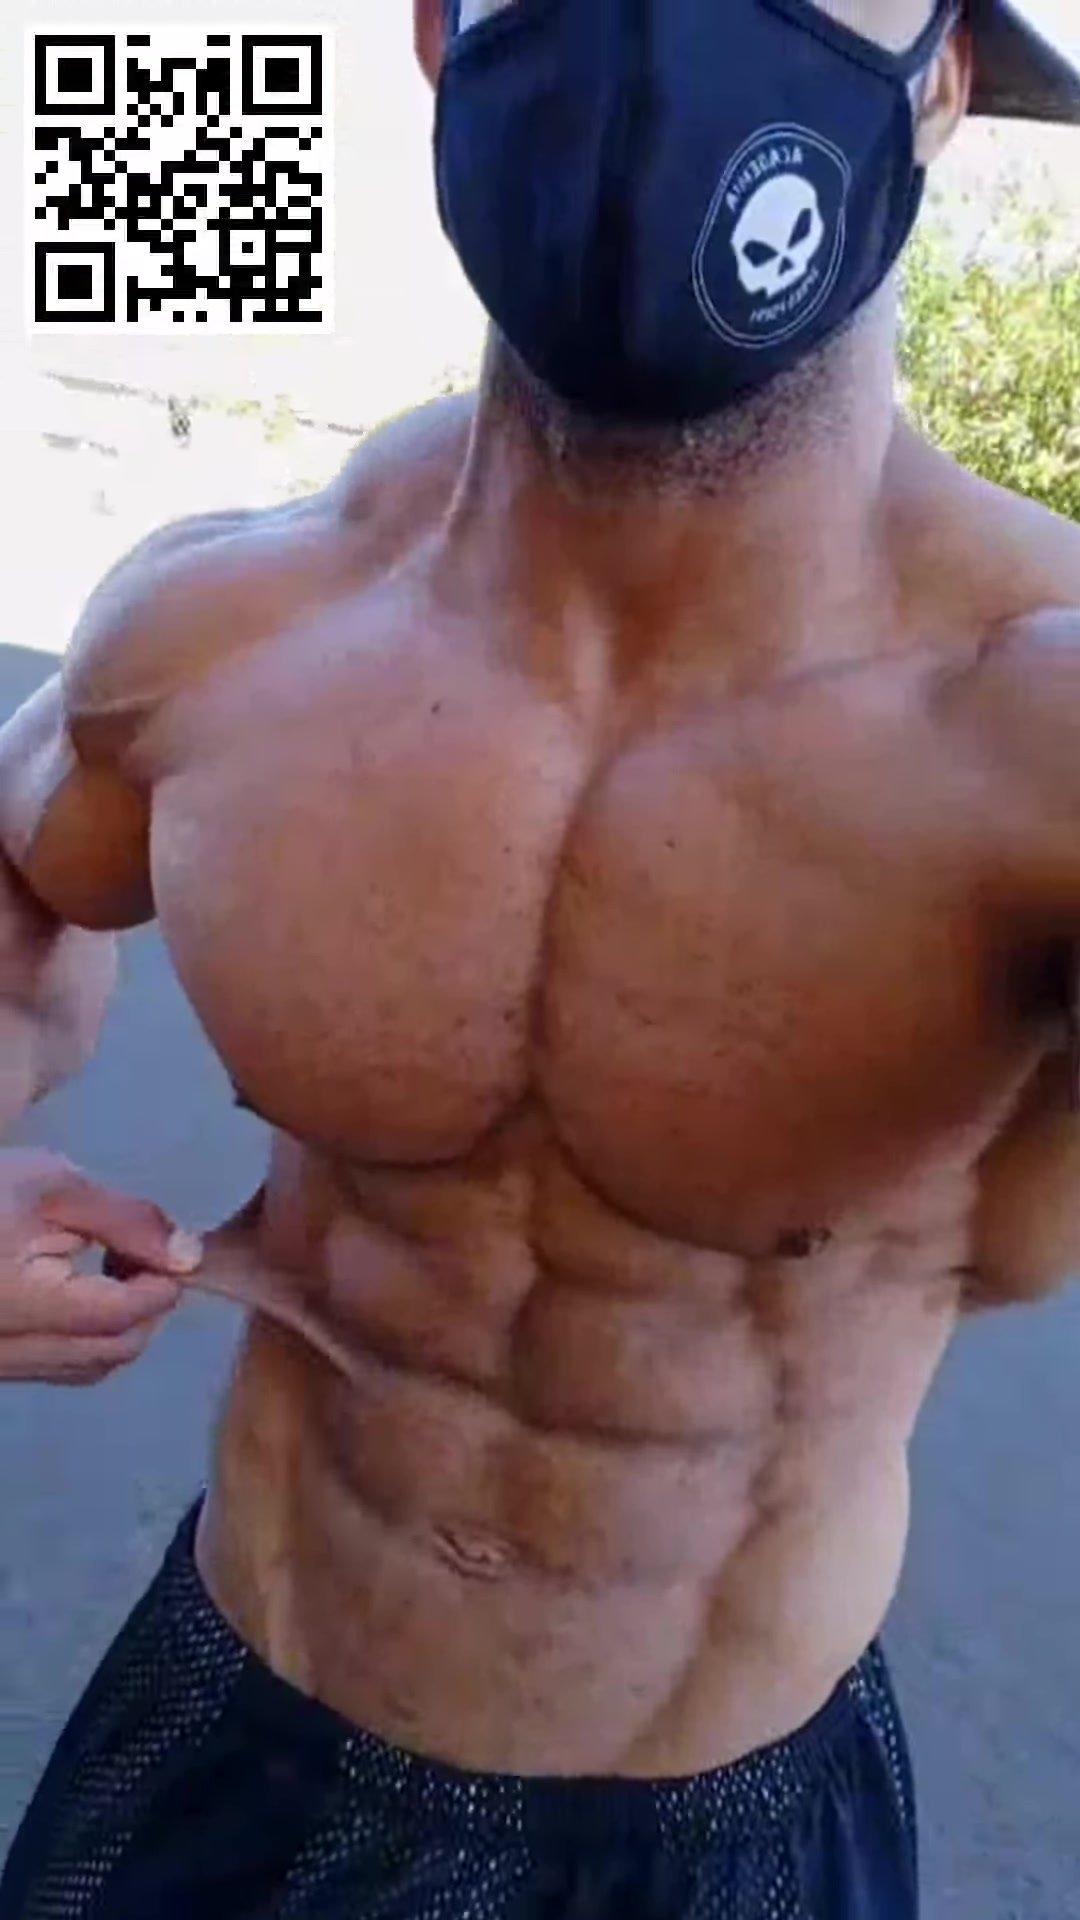 Lean muscular guy